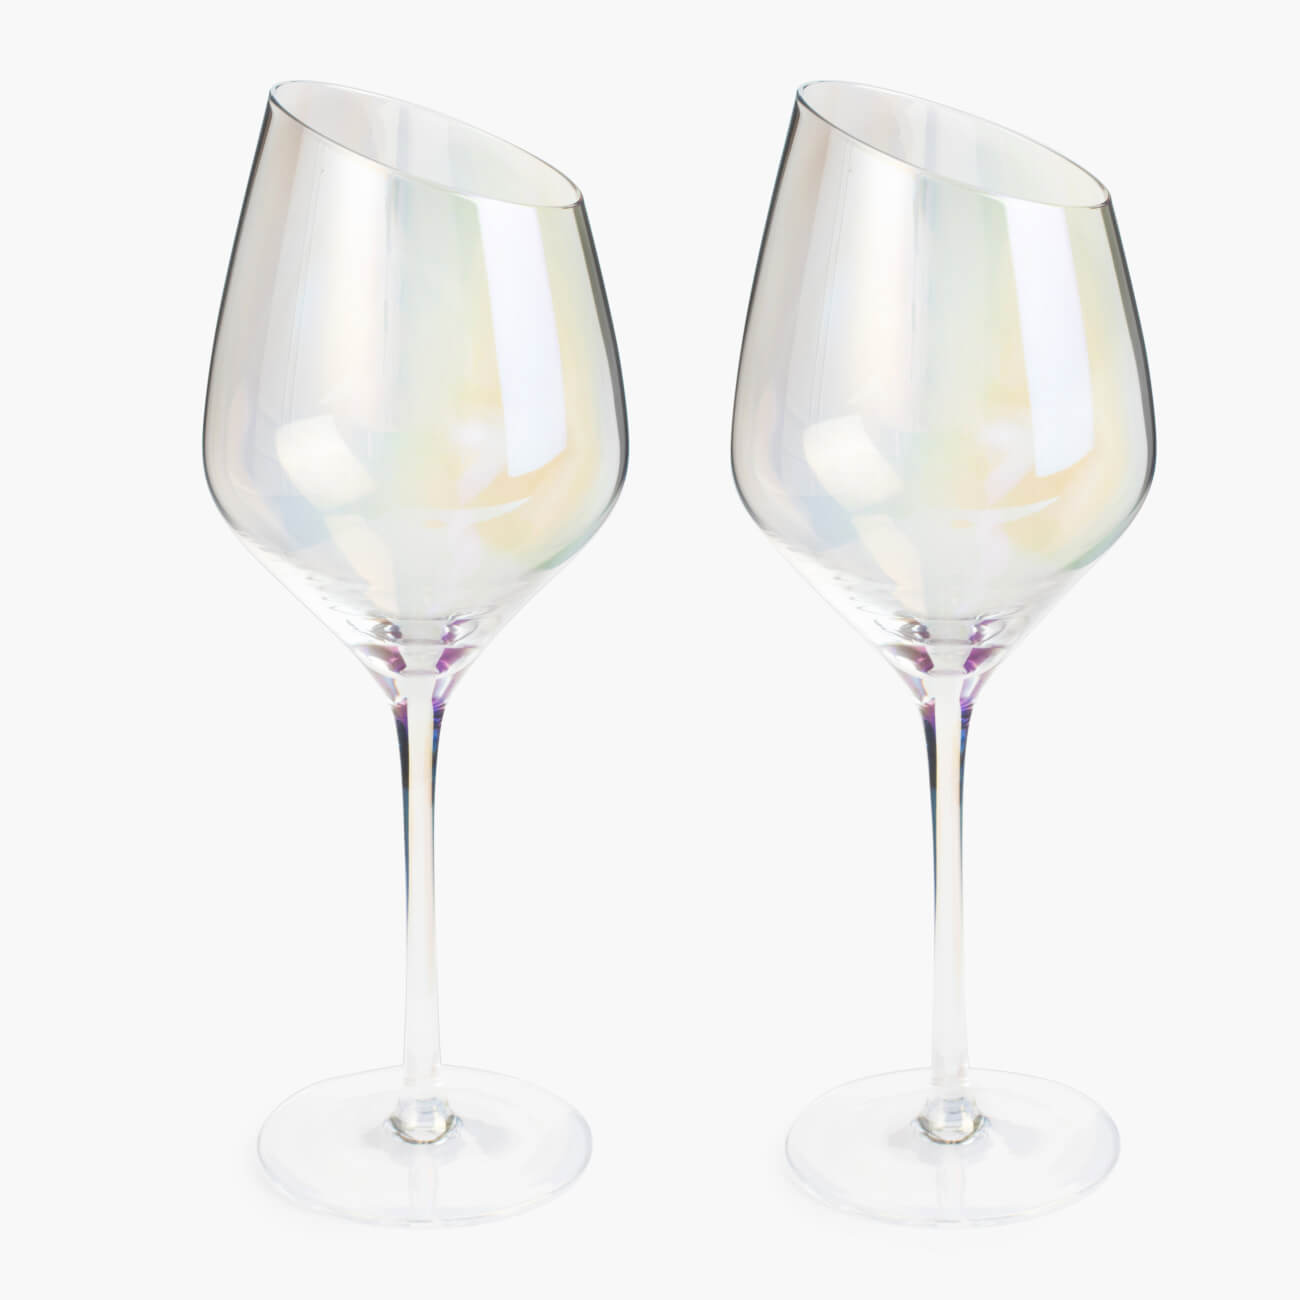 Бокал для белого вина, 460 мл, 4 шт, стекло, перламутр, Charm L polar бокал для вина luminarc селест сияющий графит p1565 6шт 270мл